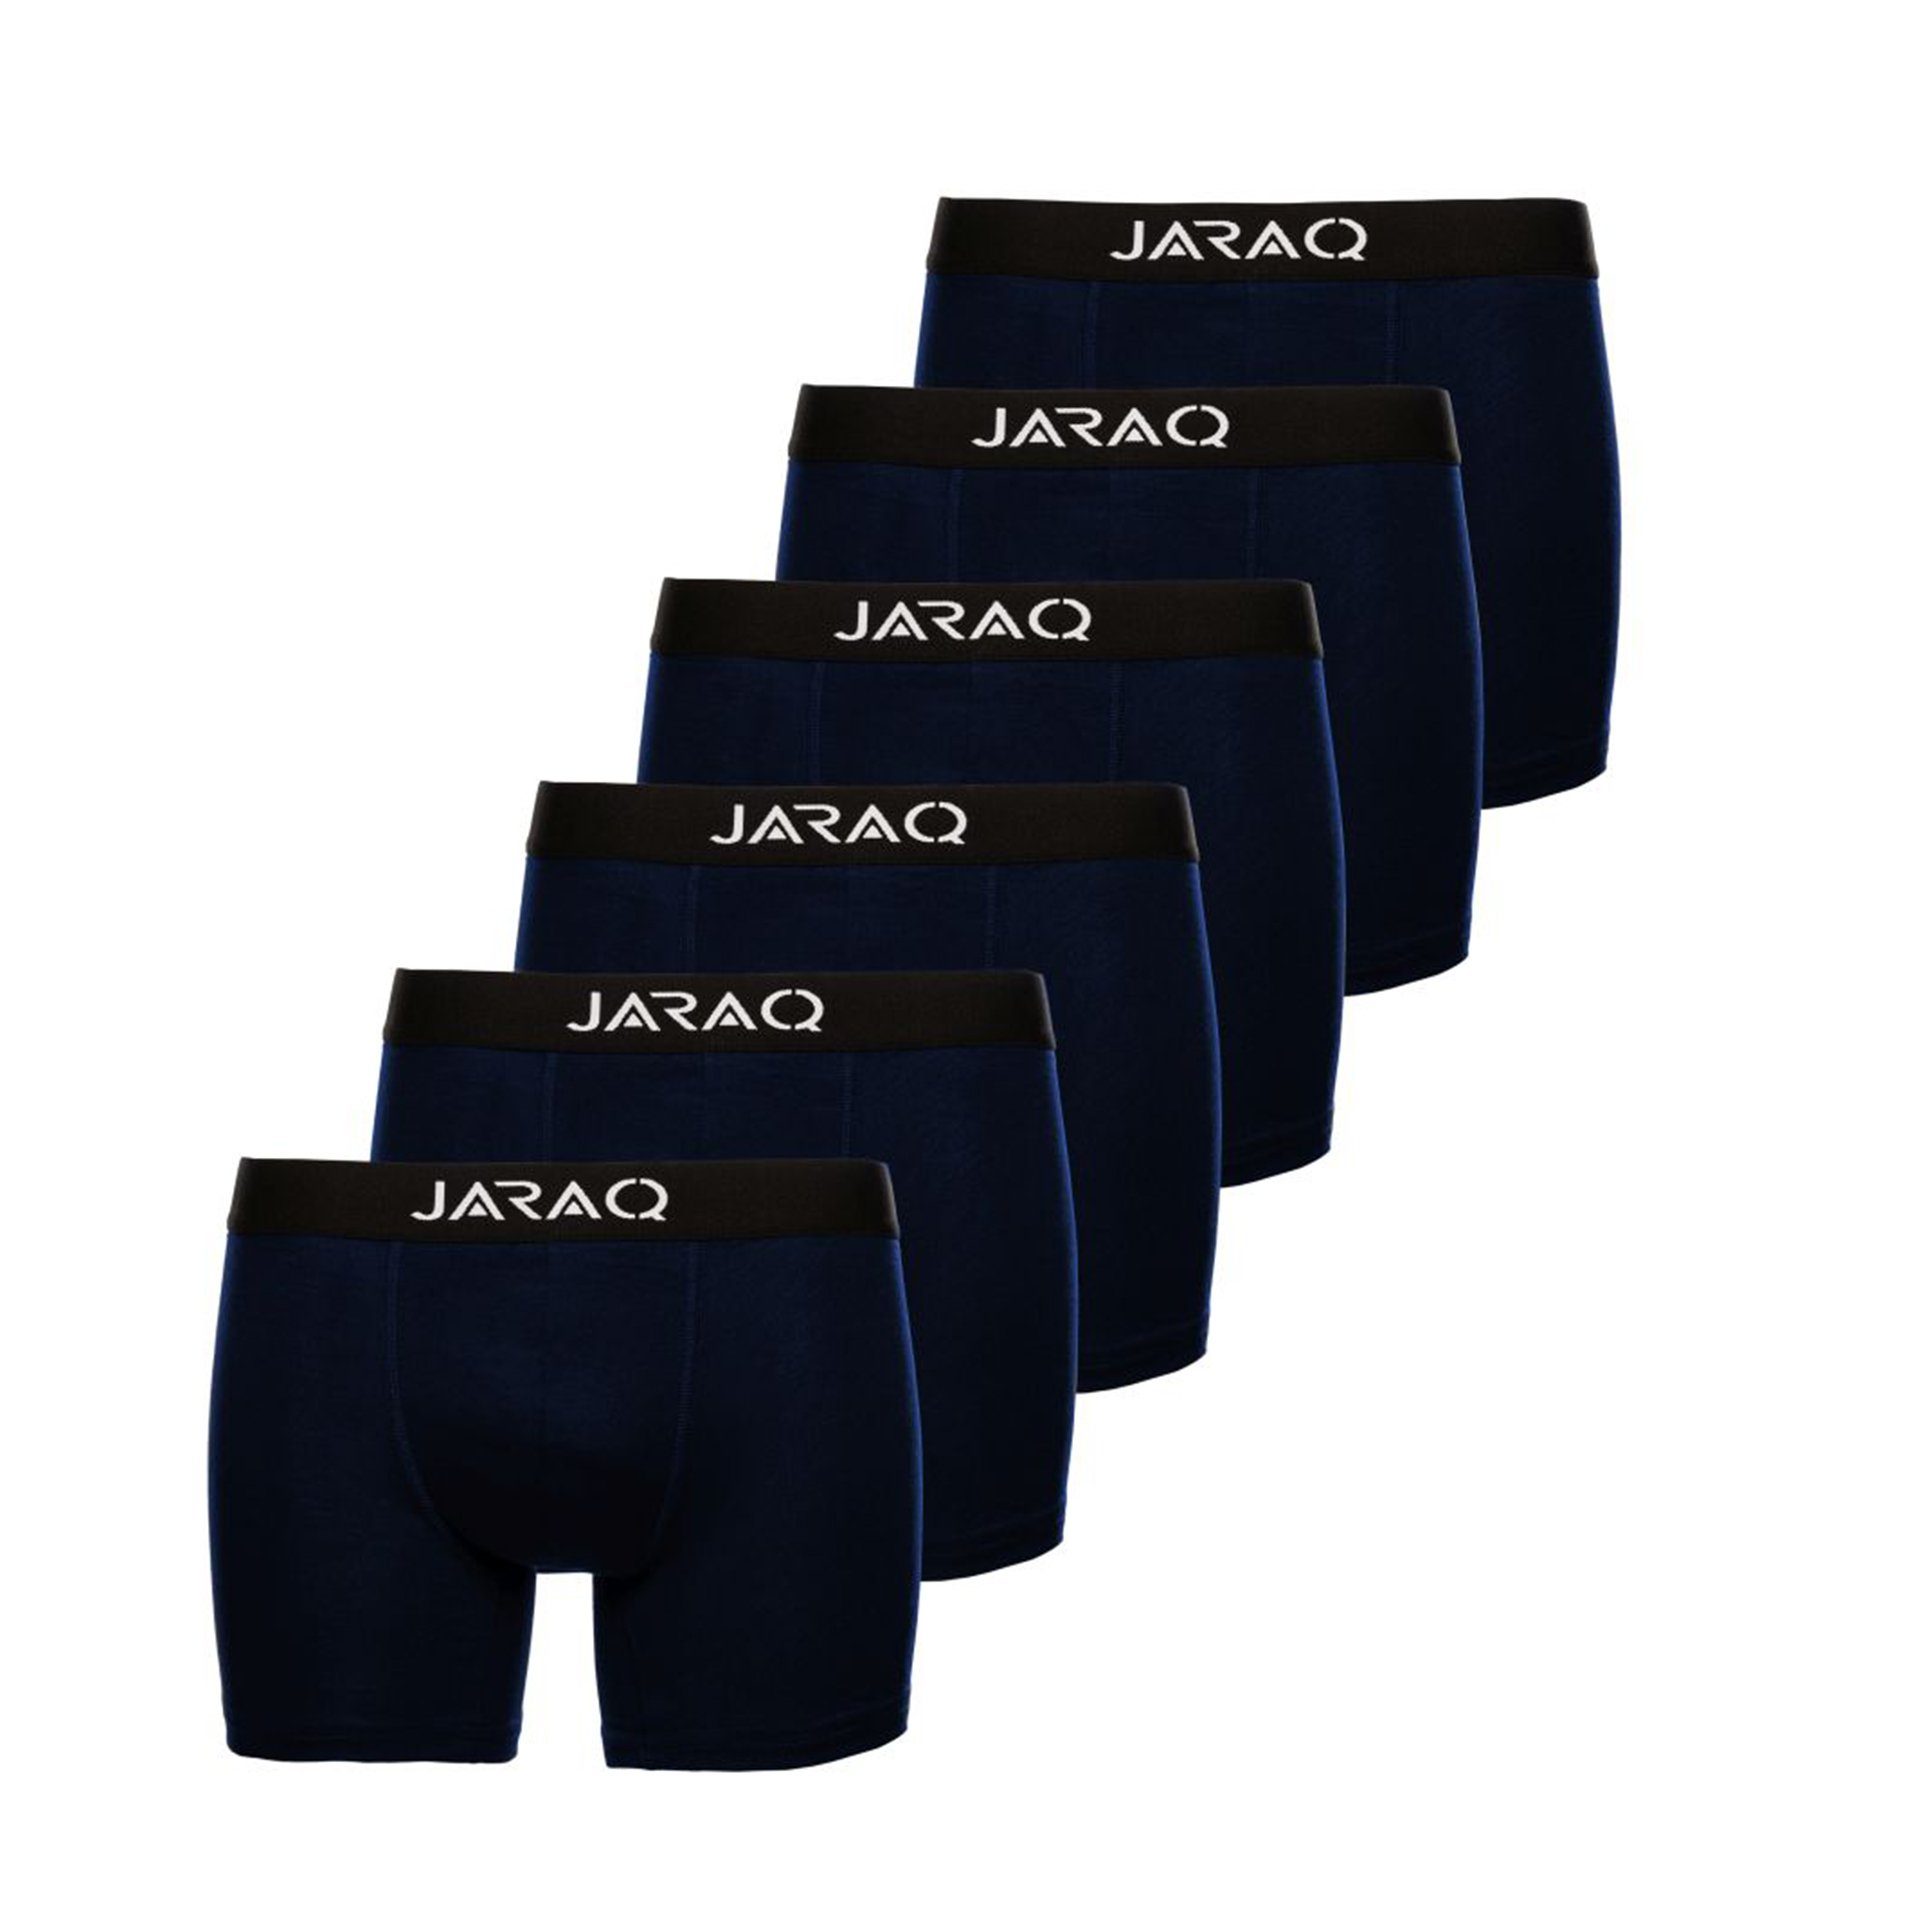 JARAQ Boxer JARAQ Bambus Boxershorts Herren 6er Pack Perfekte Passform Unterhosen für Männer S - 4XL Blau